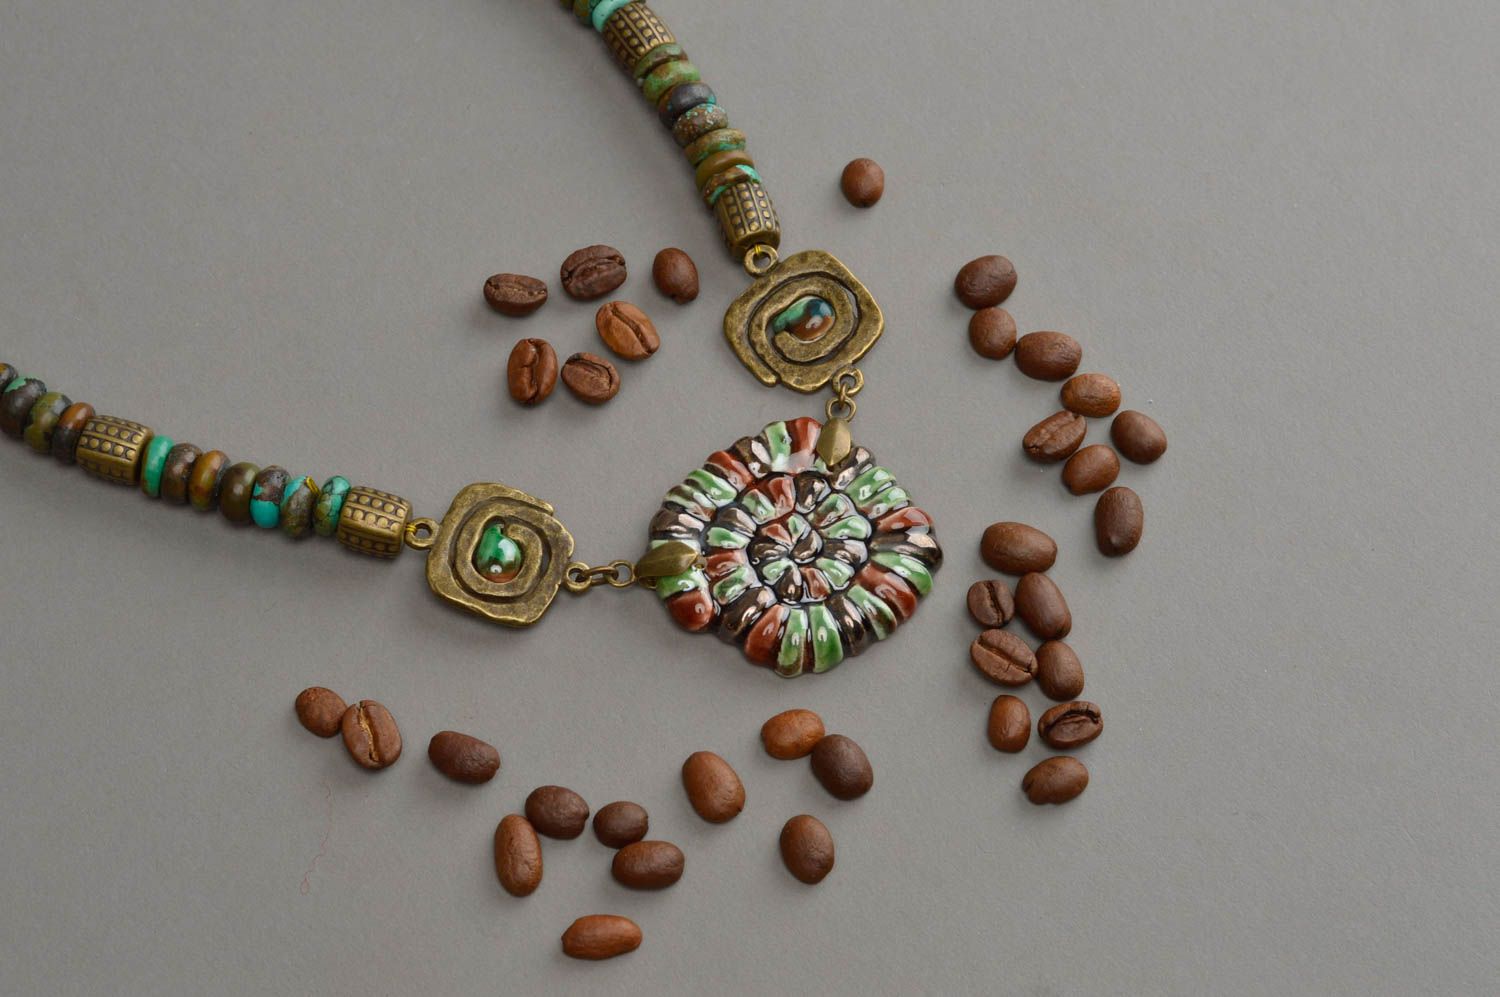 Яркий глиняный кулон ручной работы красивый аксессуар для женщин Мозаика фото 1